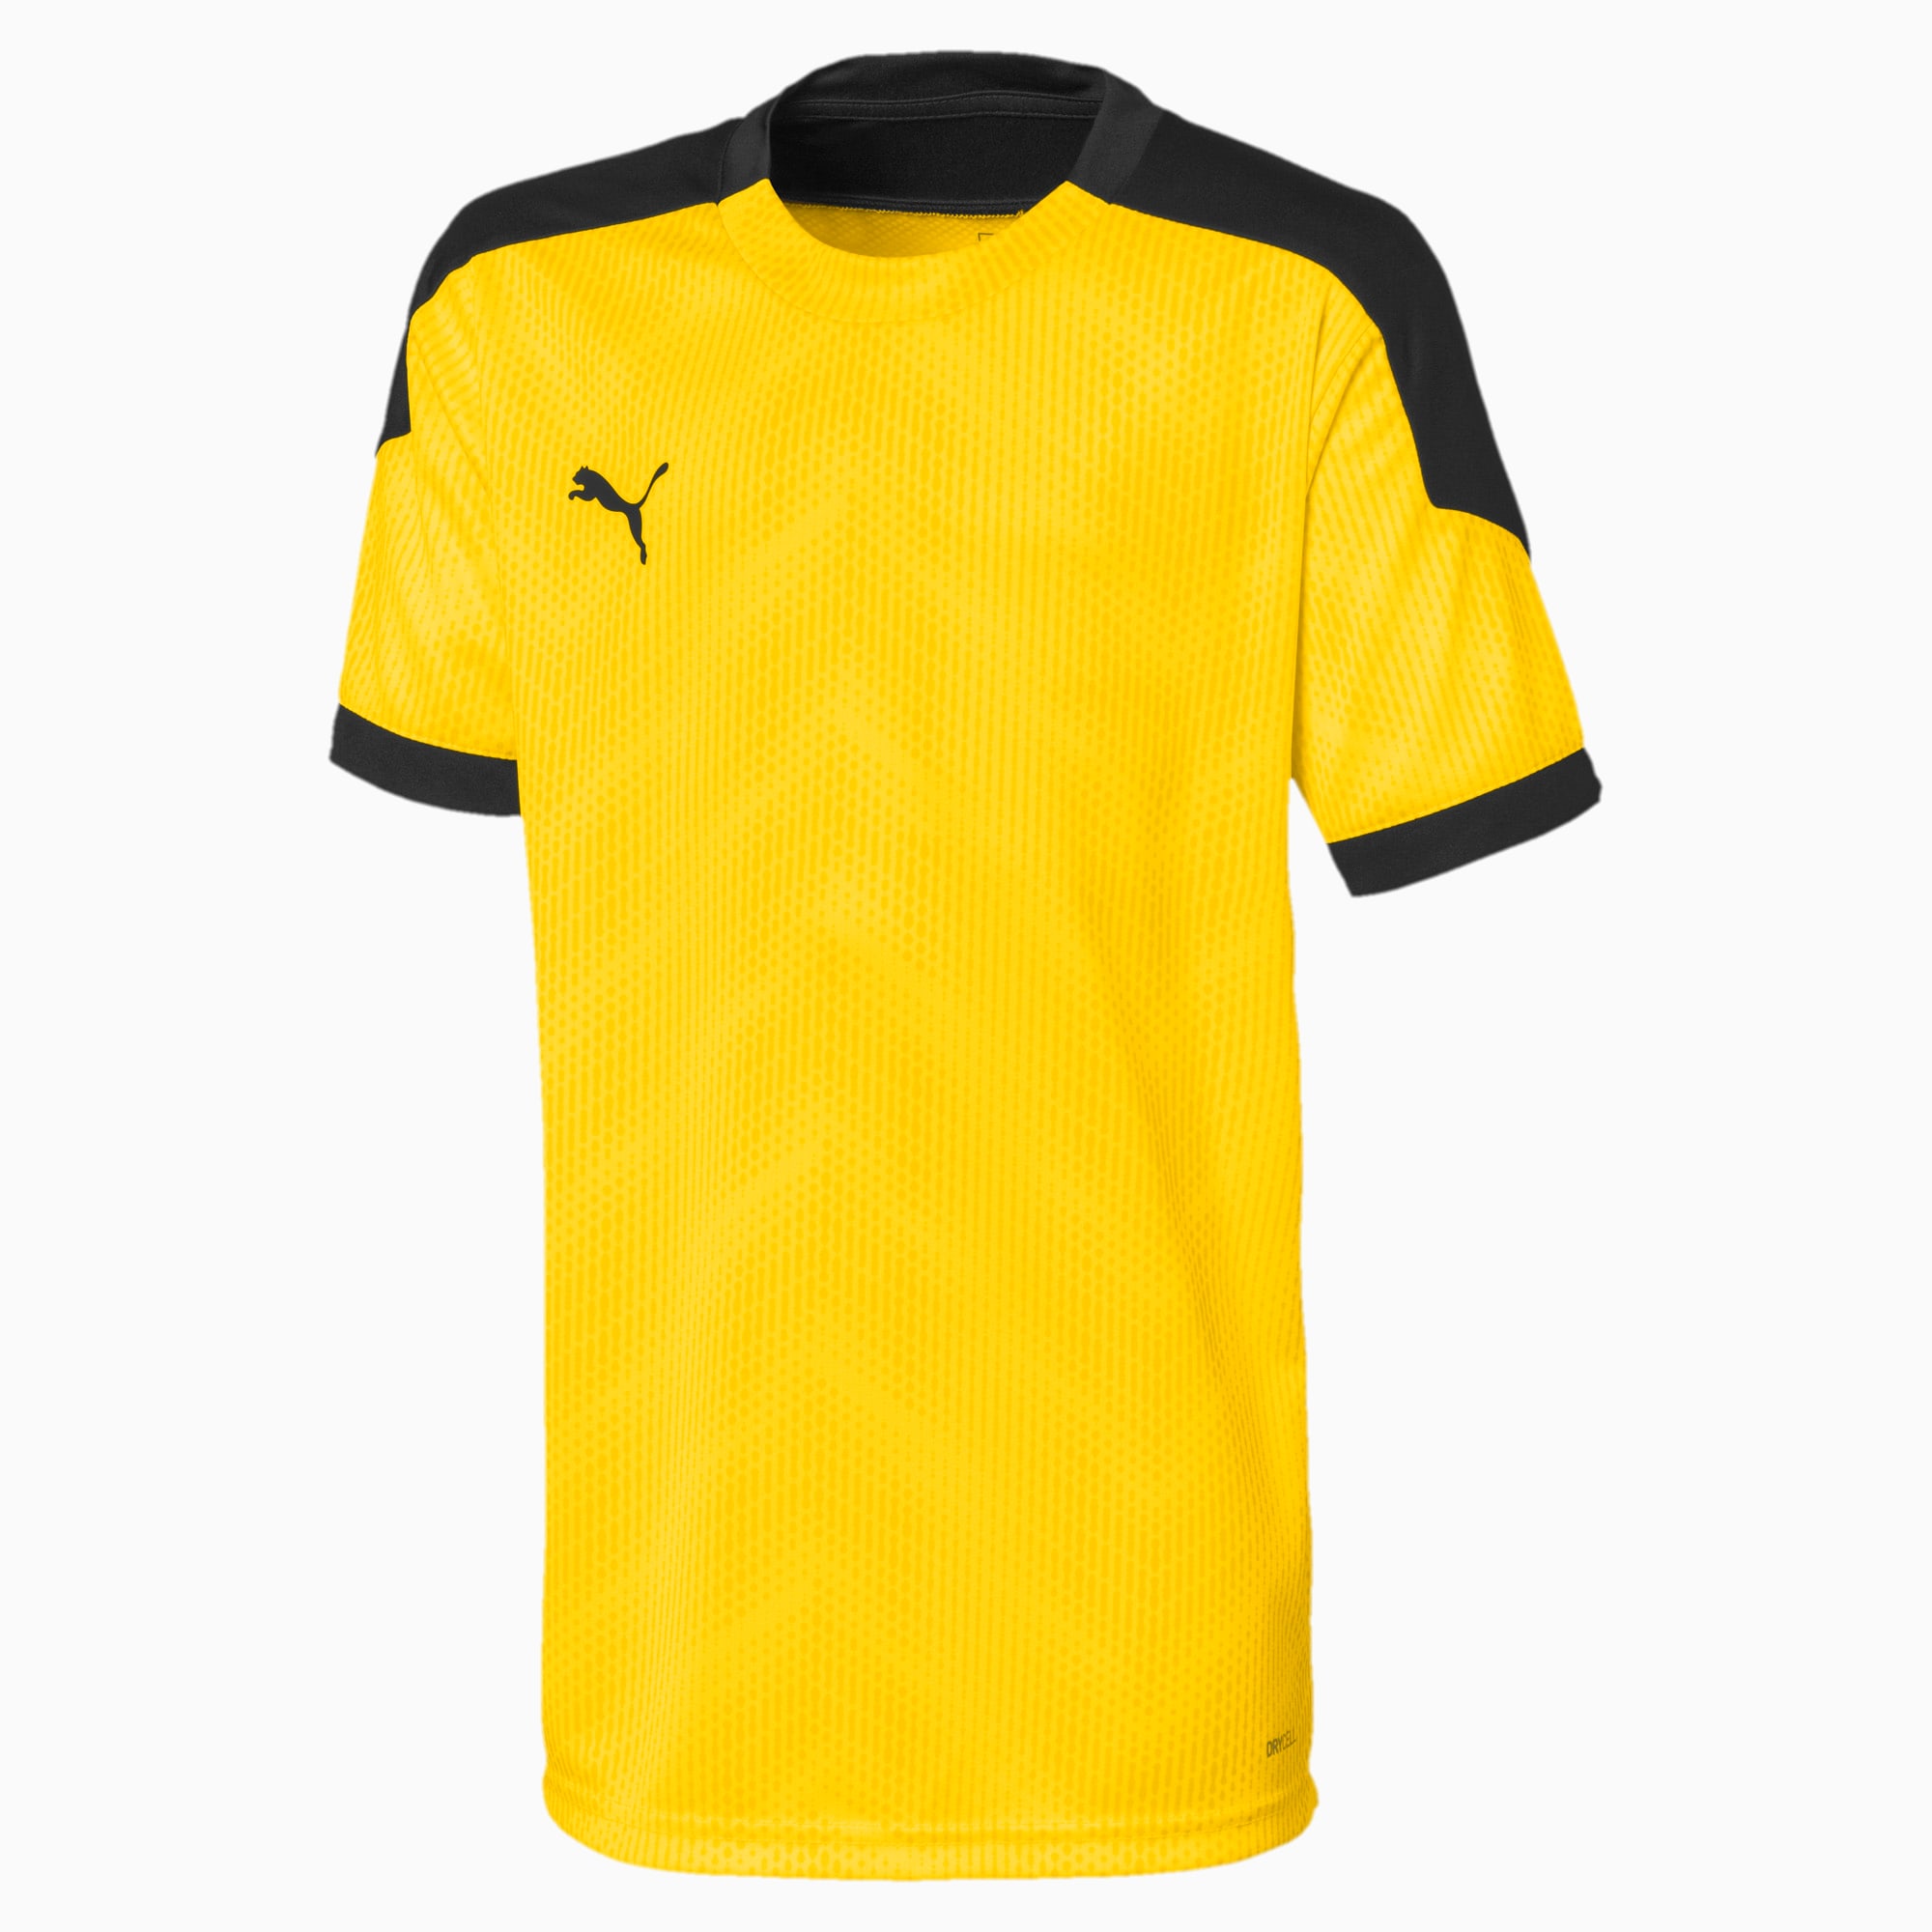 Image of PUMA ftblNXT Graphic Kinder Fußball T-Shirt | Mit Aucun | Gelb/Schwarz | Größe: 164